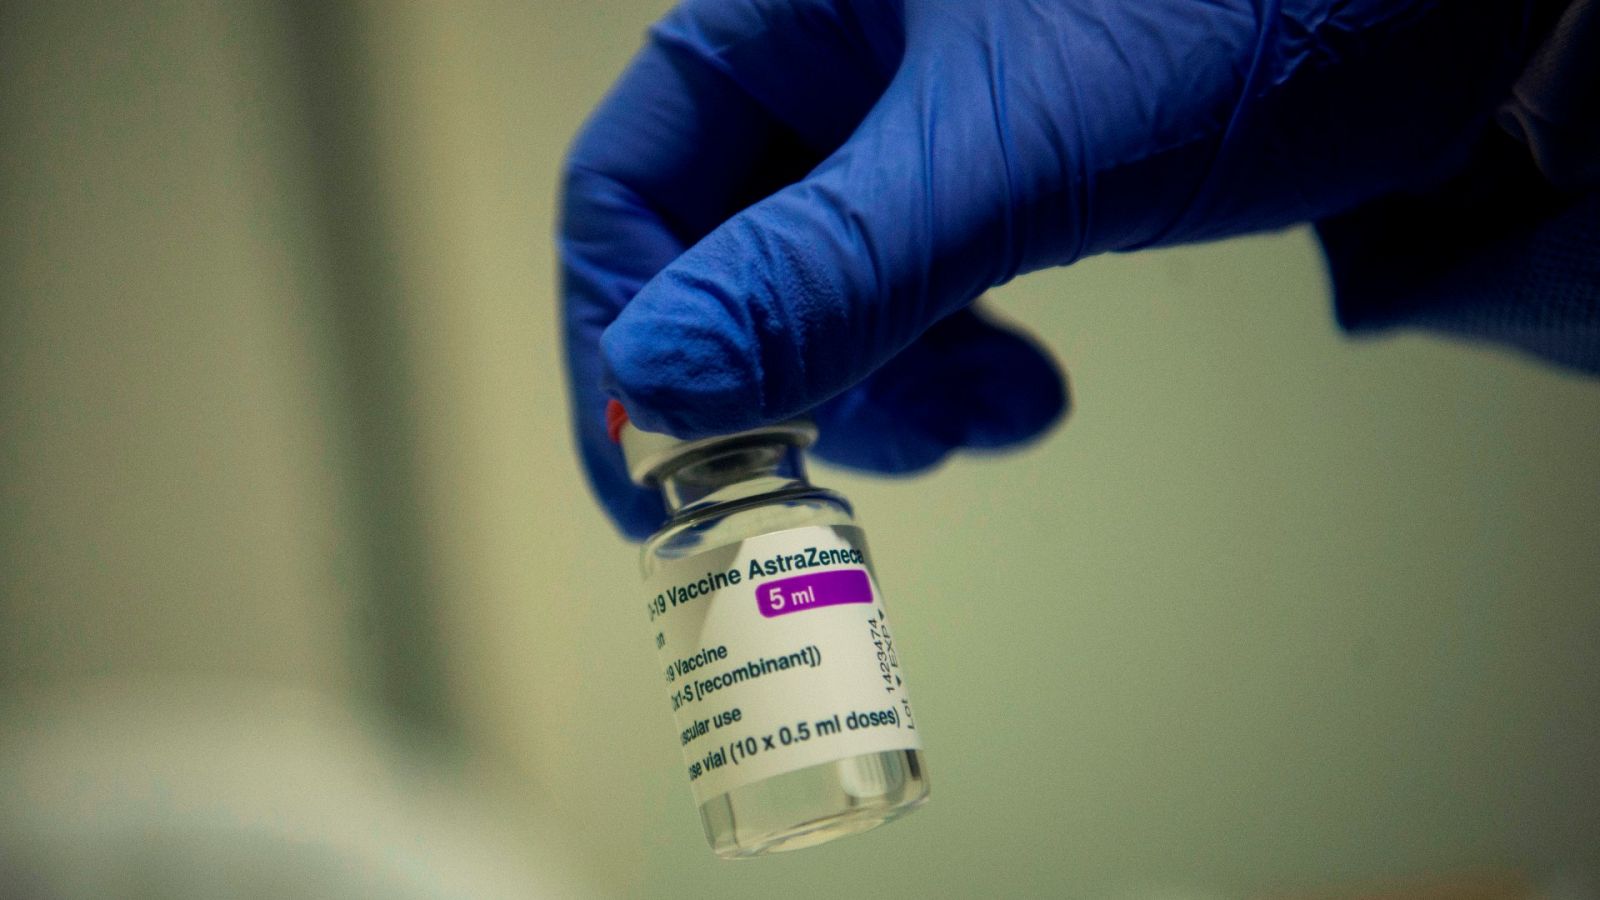 Los expertos insisten sobre AstraZeneca: "Es mucho más favorable vacunarse"